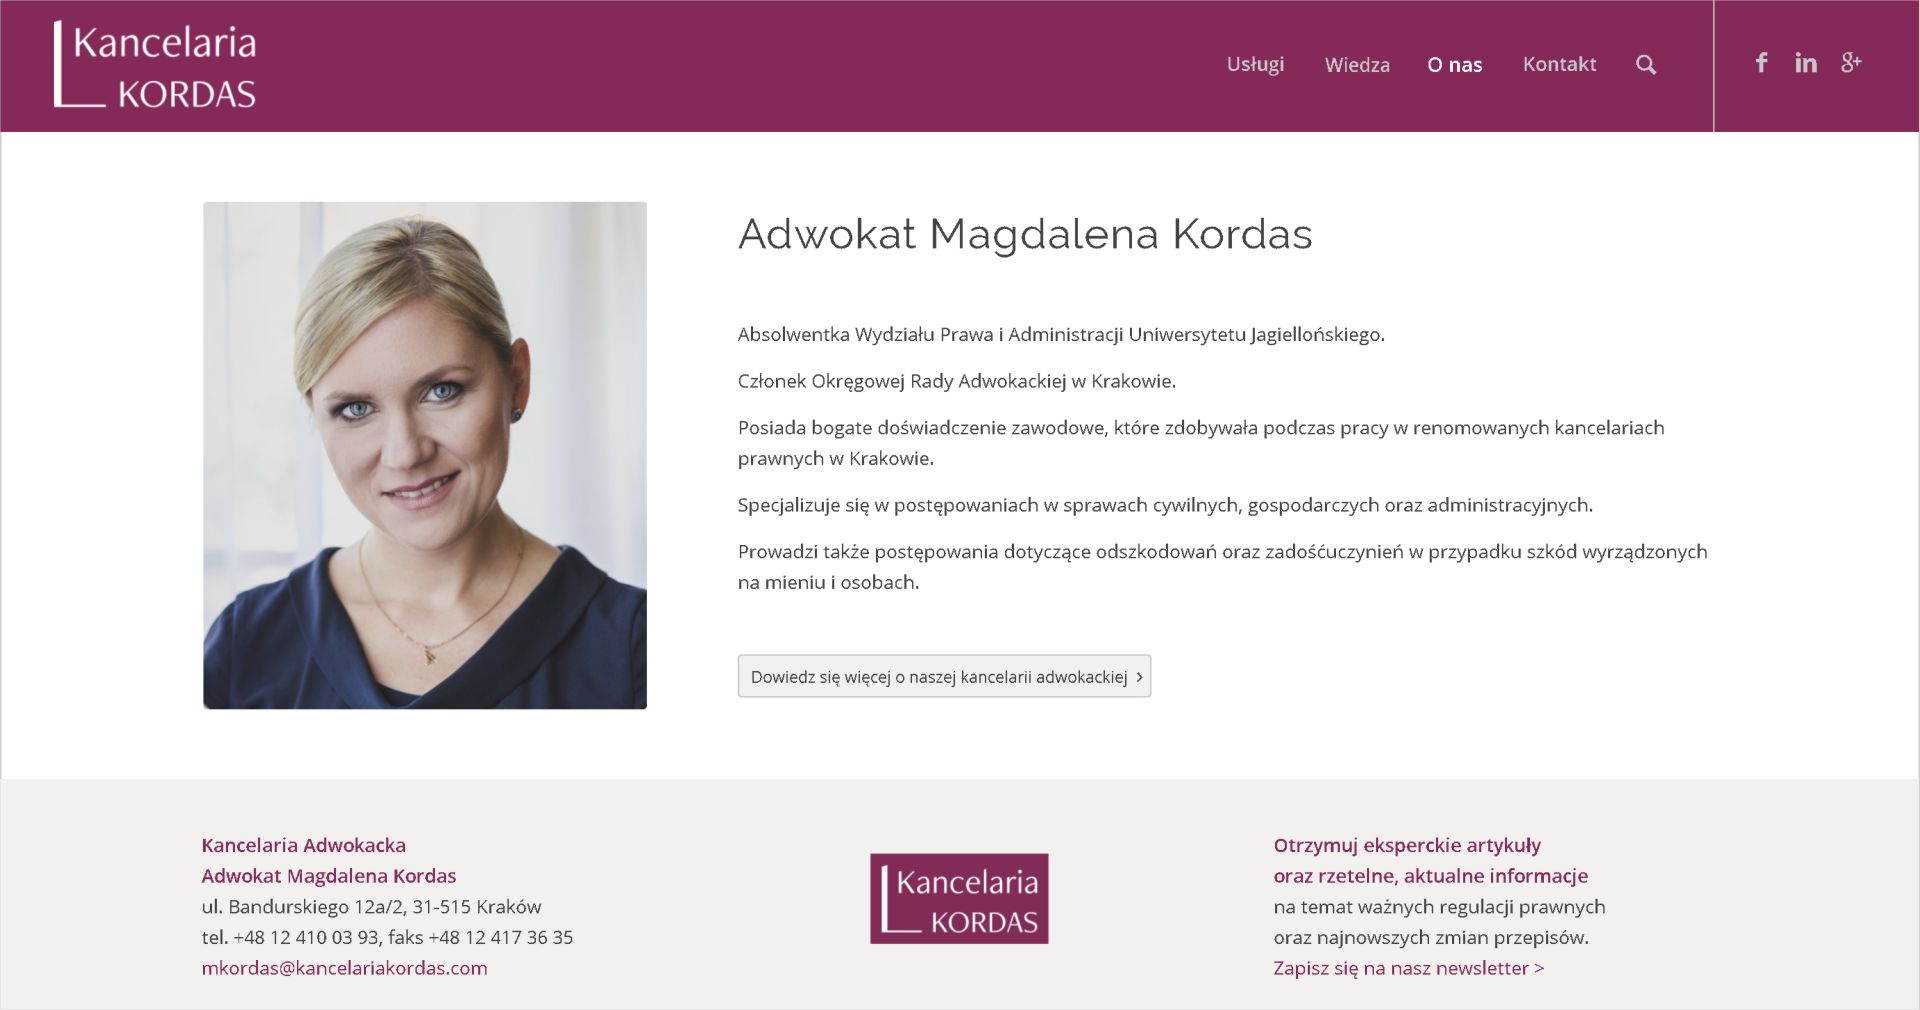 Branding, strona internetowa i newsletter dla Kancelarii KORDAS - Portfolio - Monika Stasik - Monsta